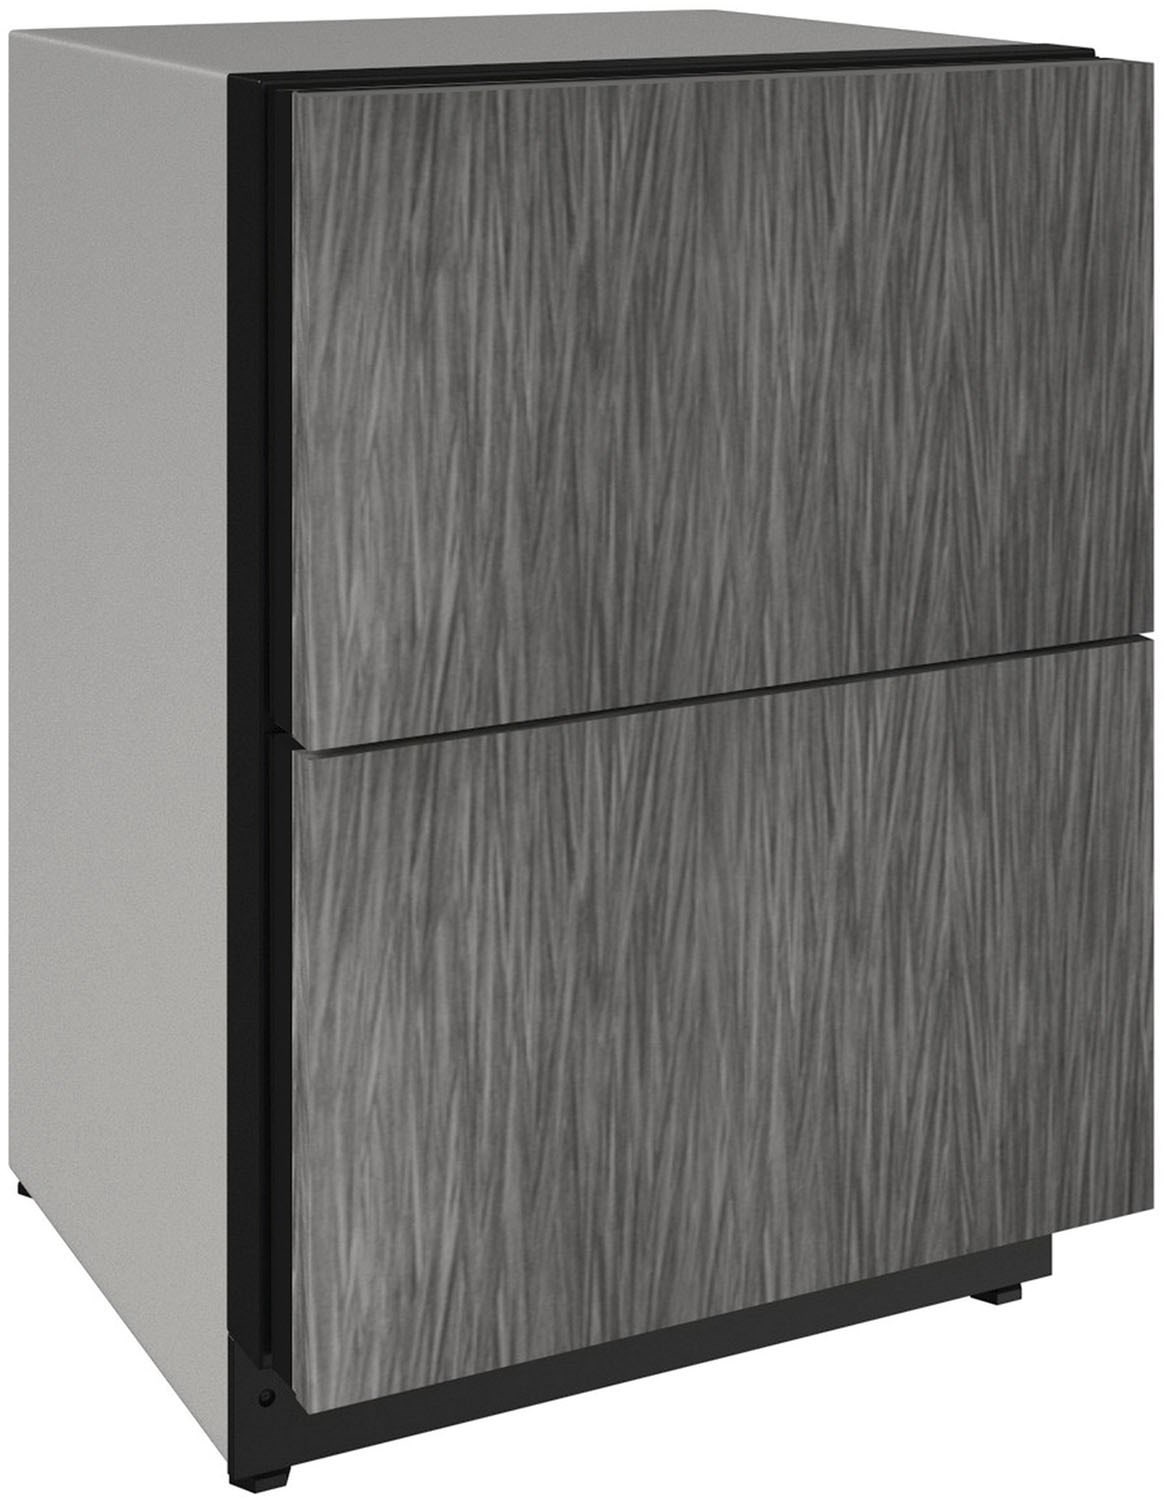 24 Inch 24"" Refrigerator Drawers - U-Line U2224DWRINT00A